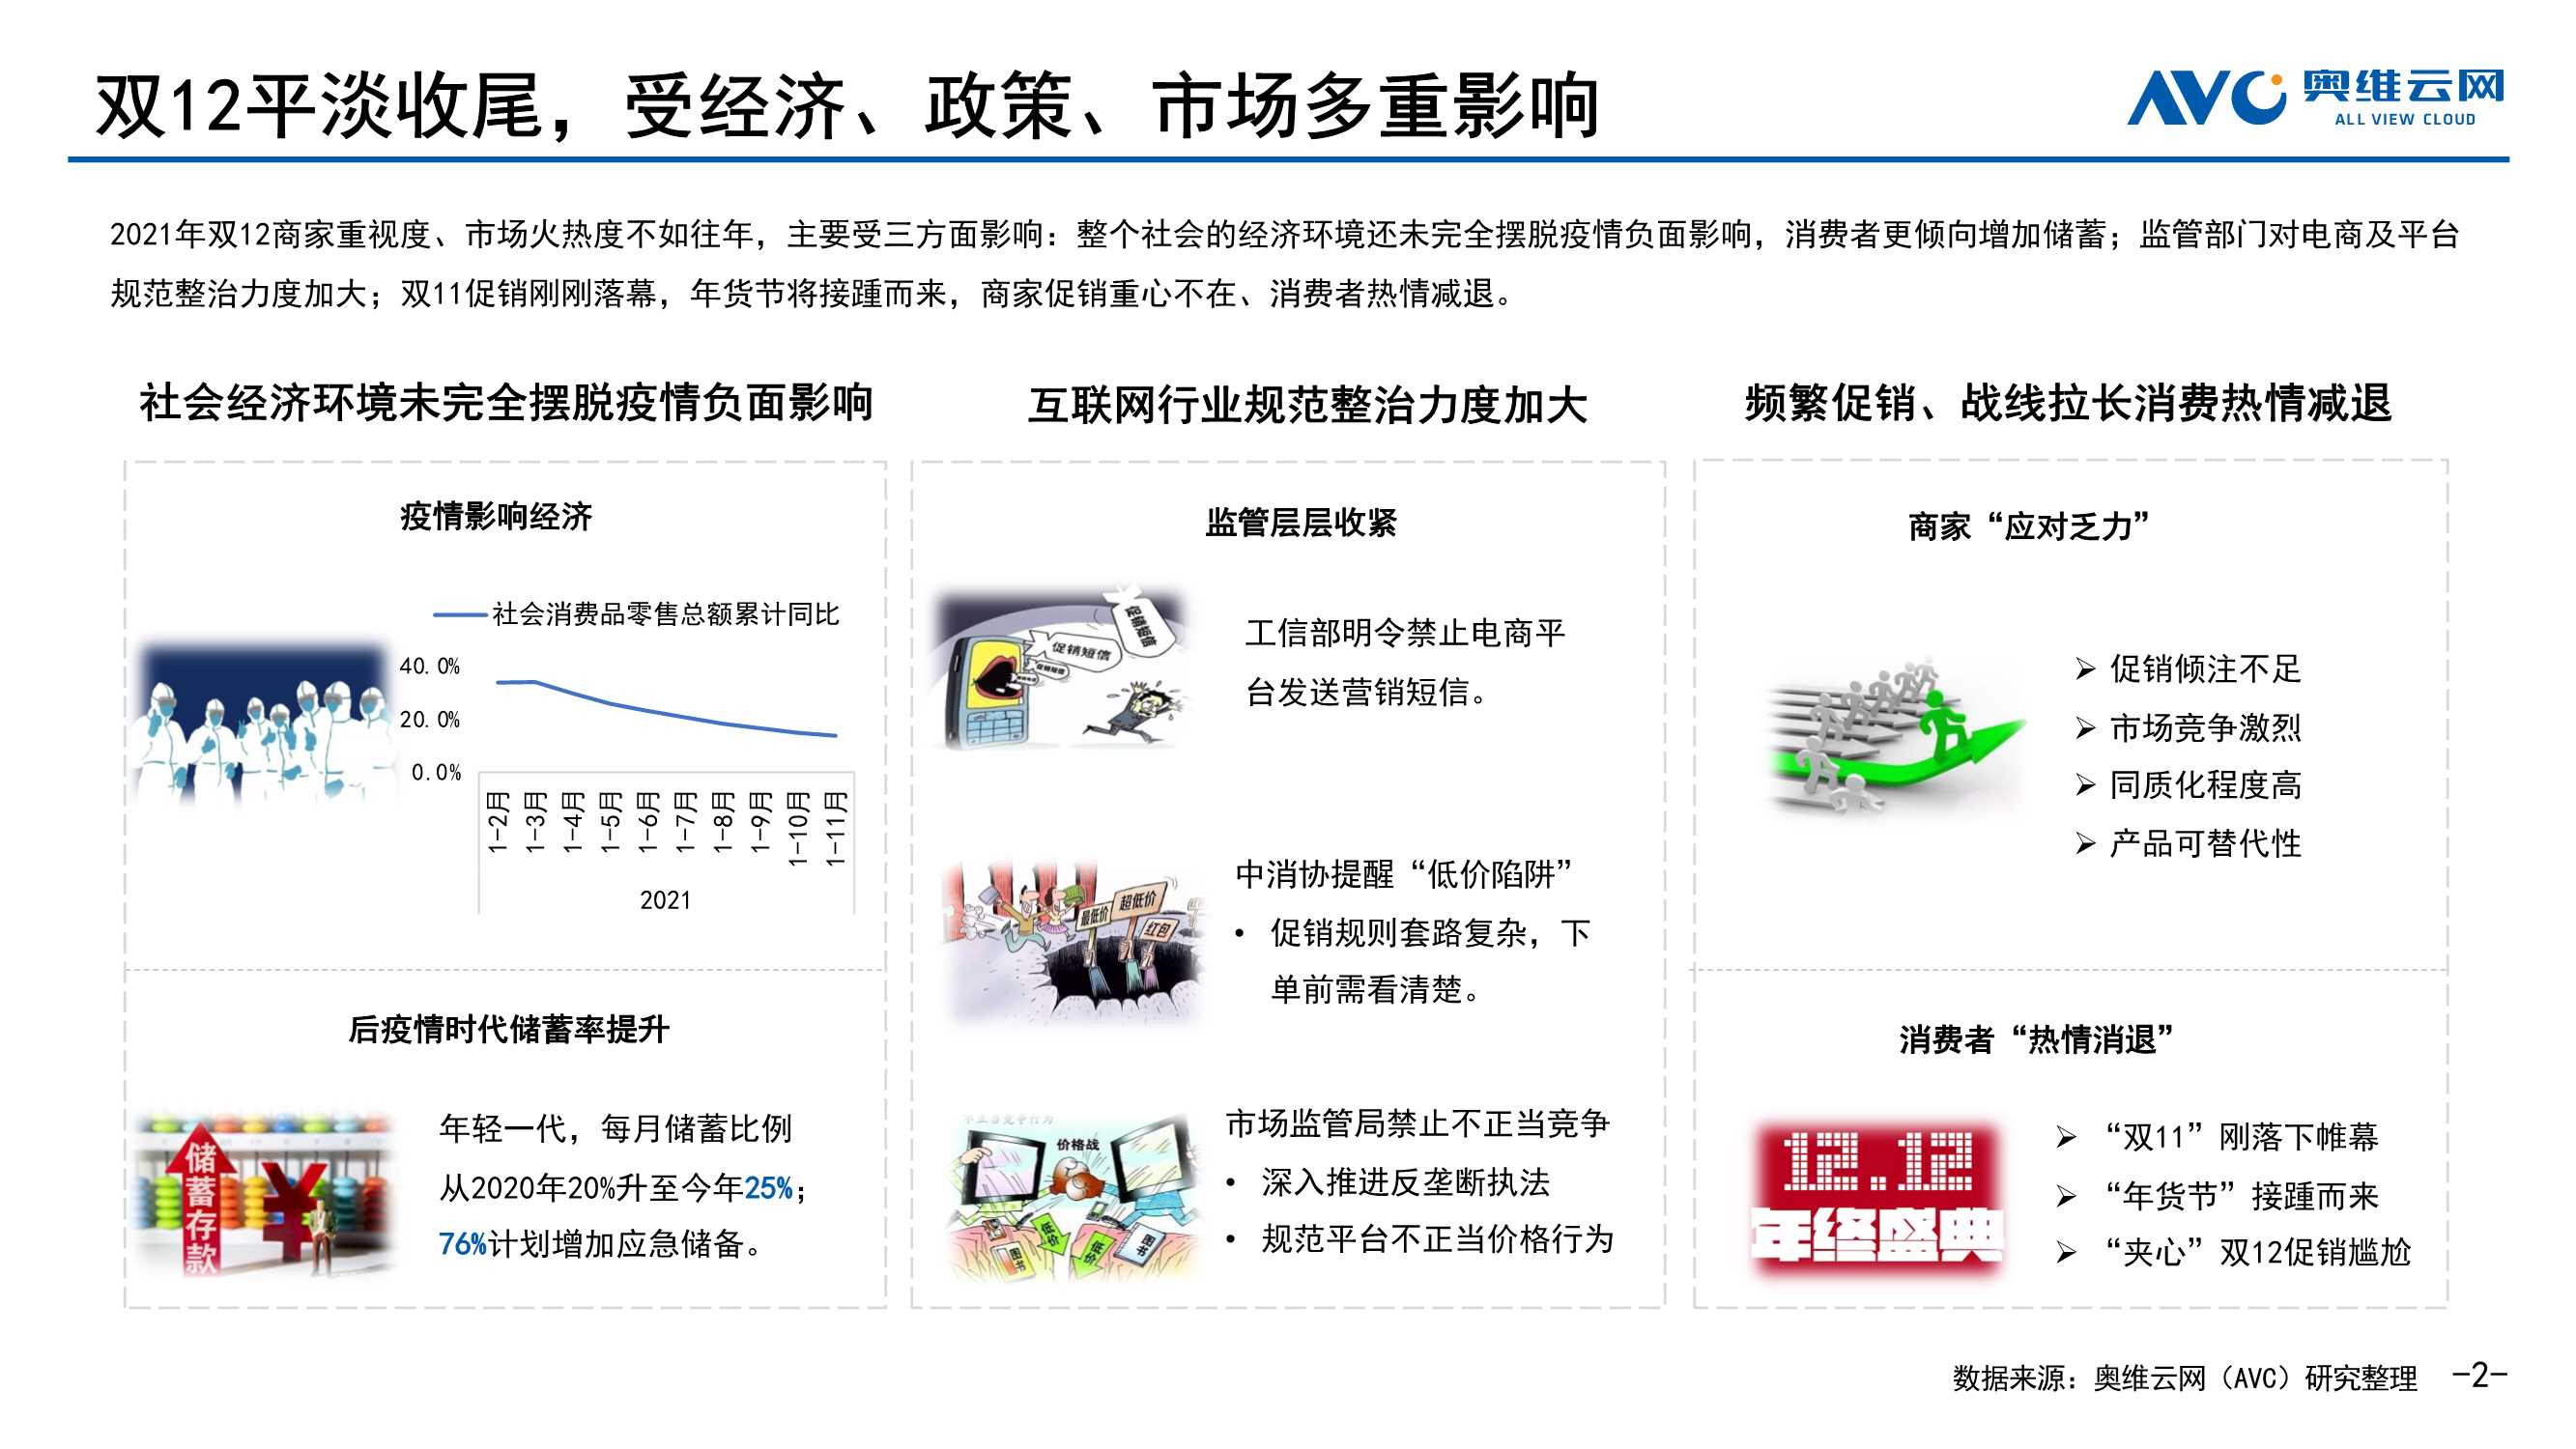 奥维云网-2021年双12中国彩电线上市场促销总结-2022.01-10页